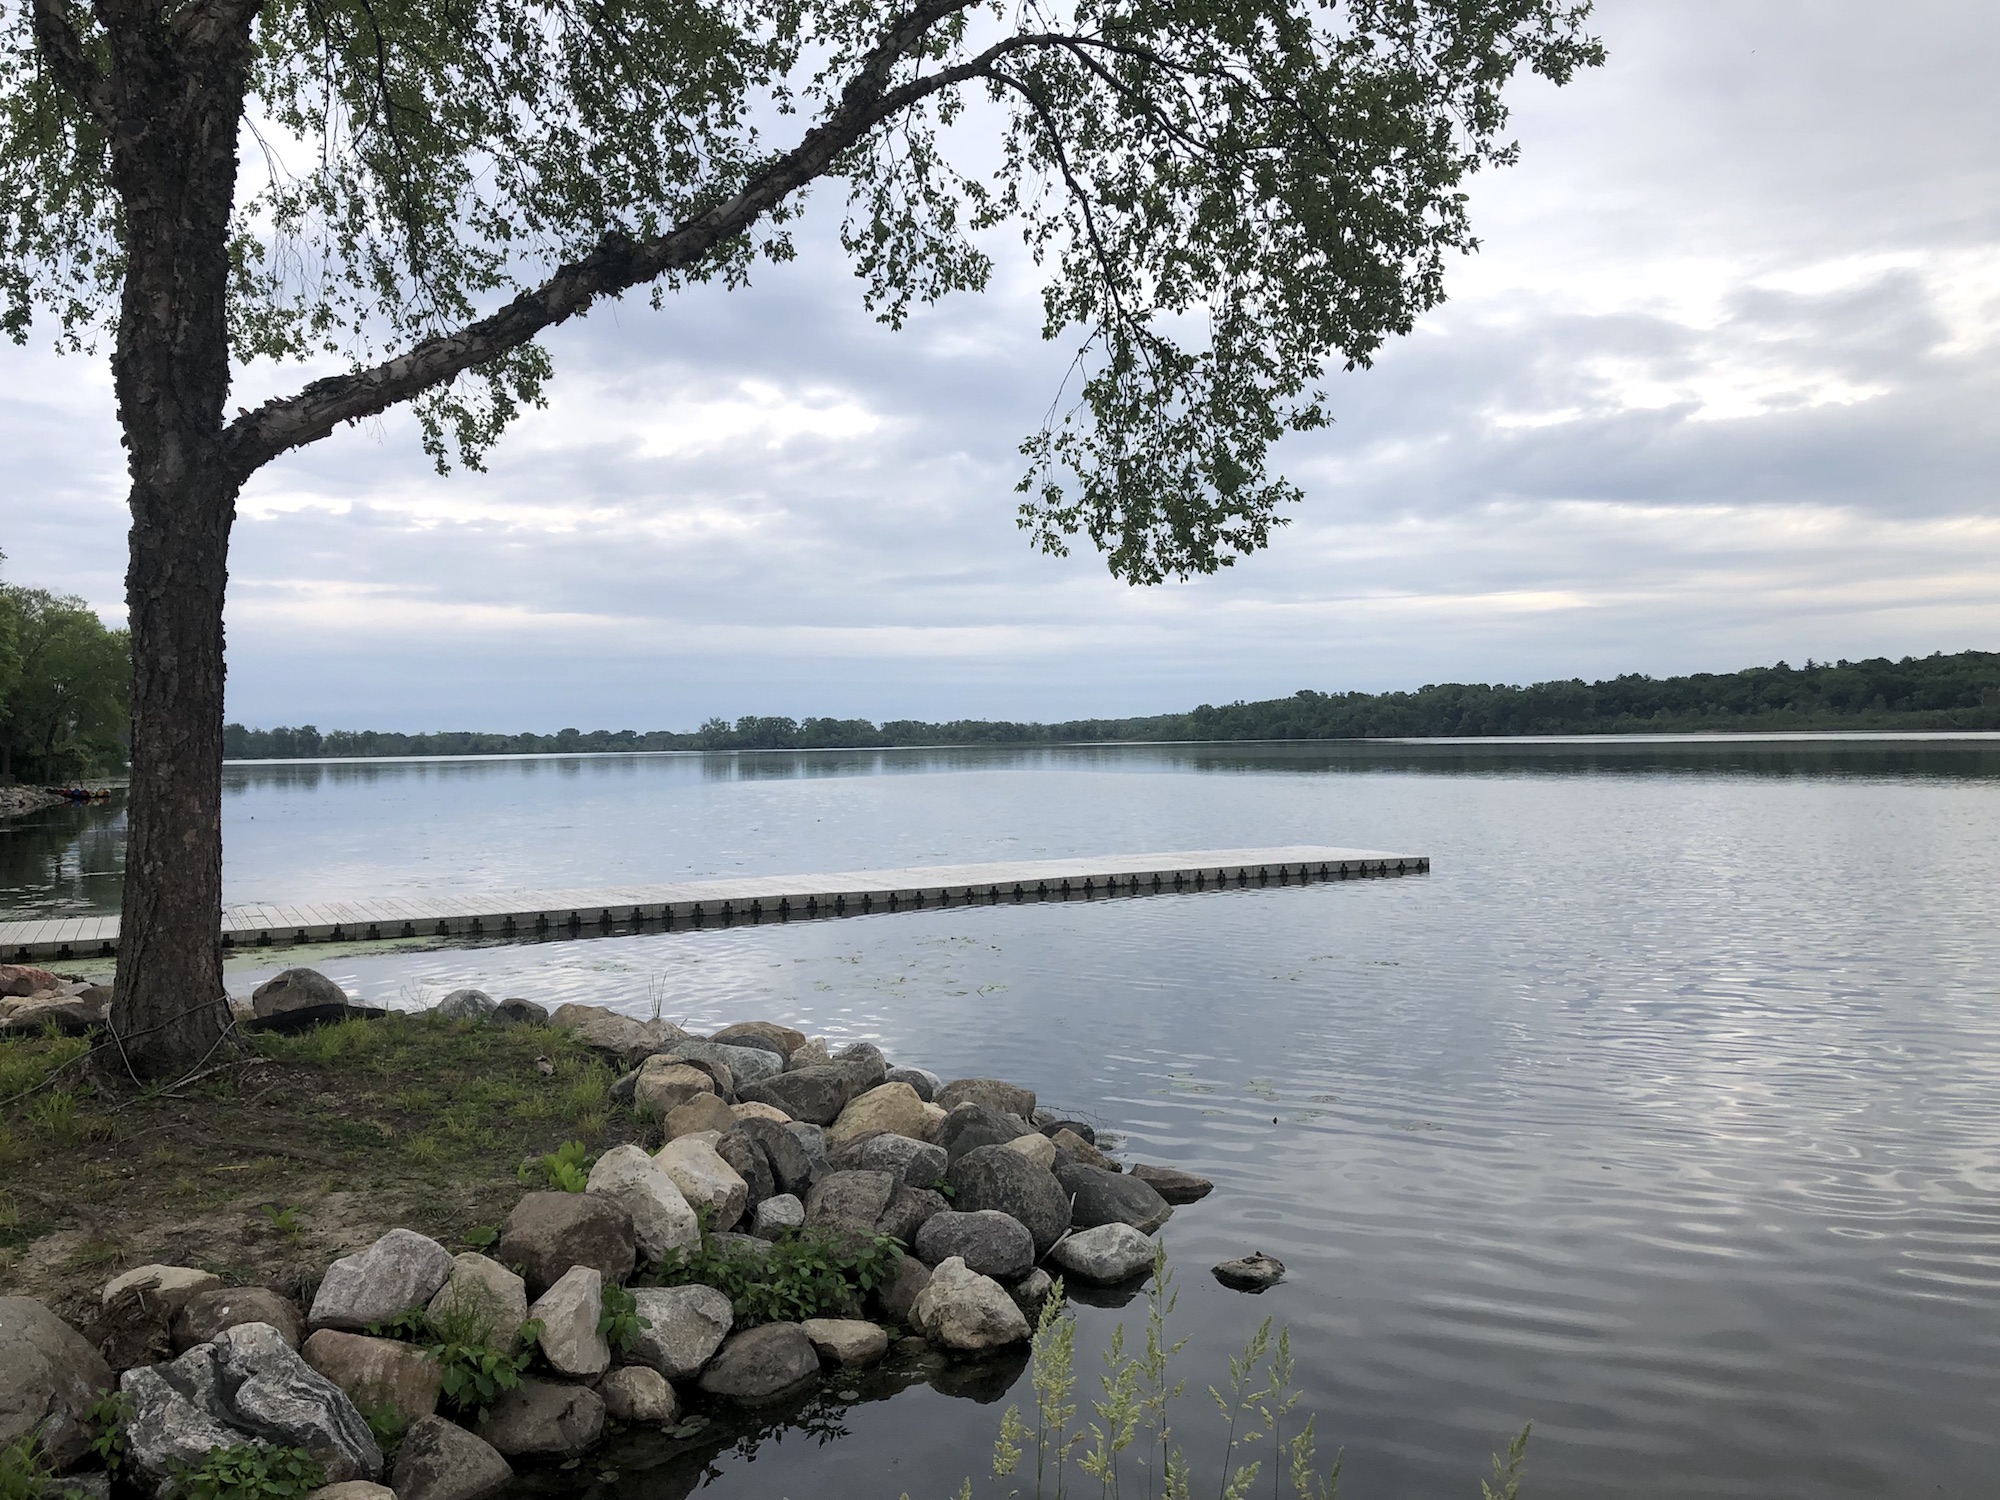 Lake Wingra on June 9, 2019.